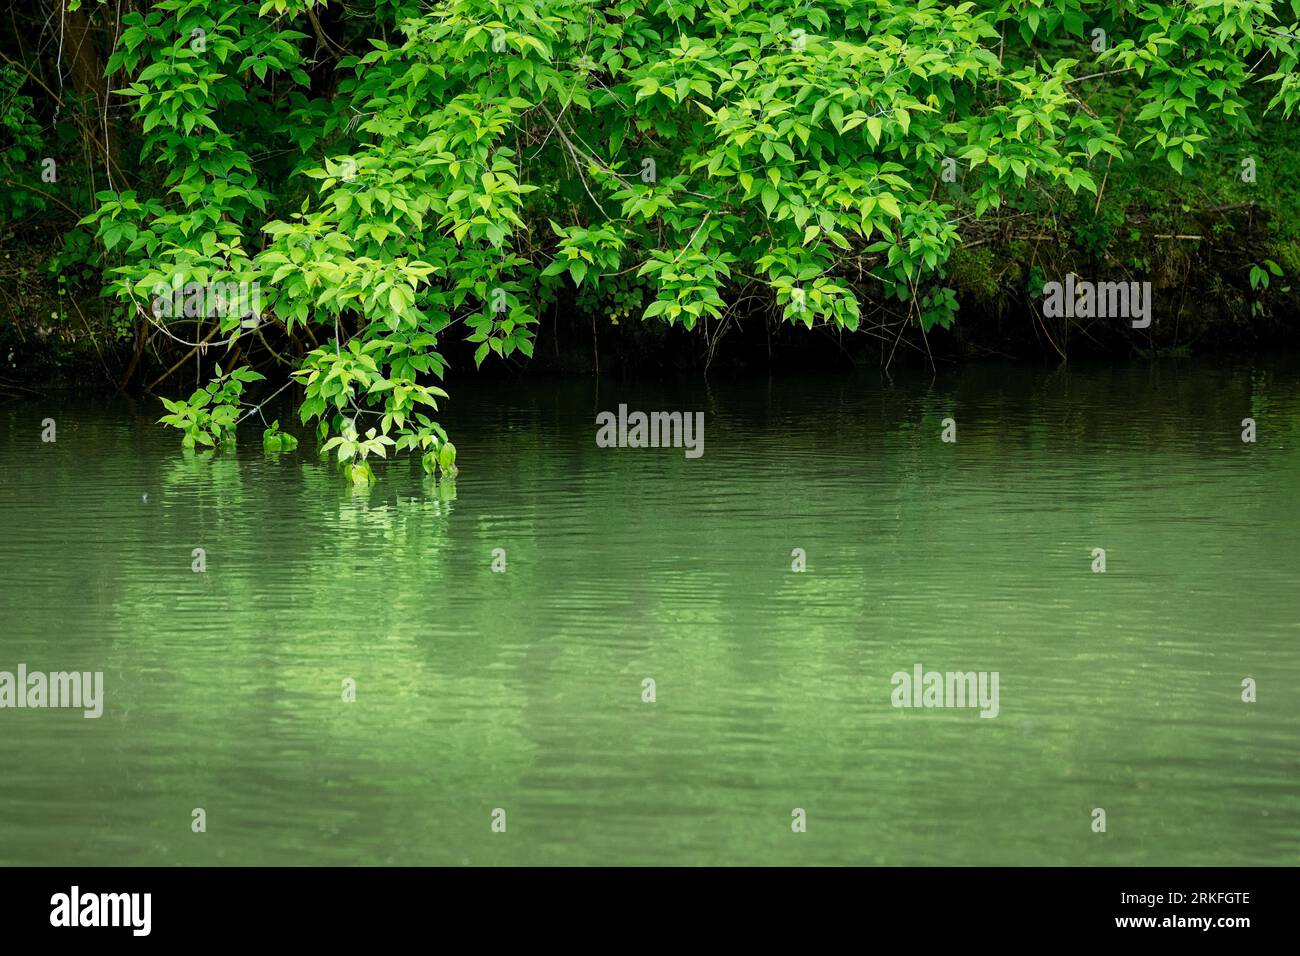 Rami verdi e frondosi sopra il fiume che si riflette Foto Stock